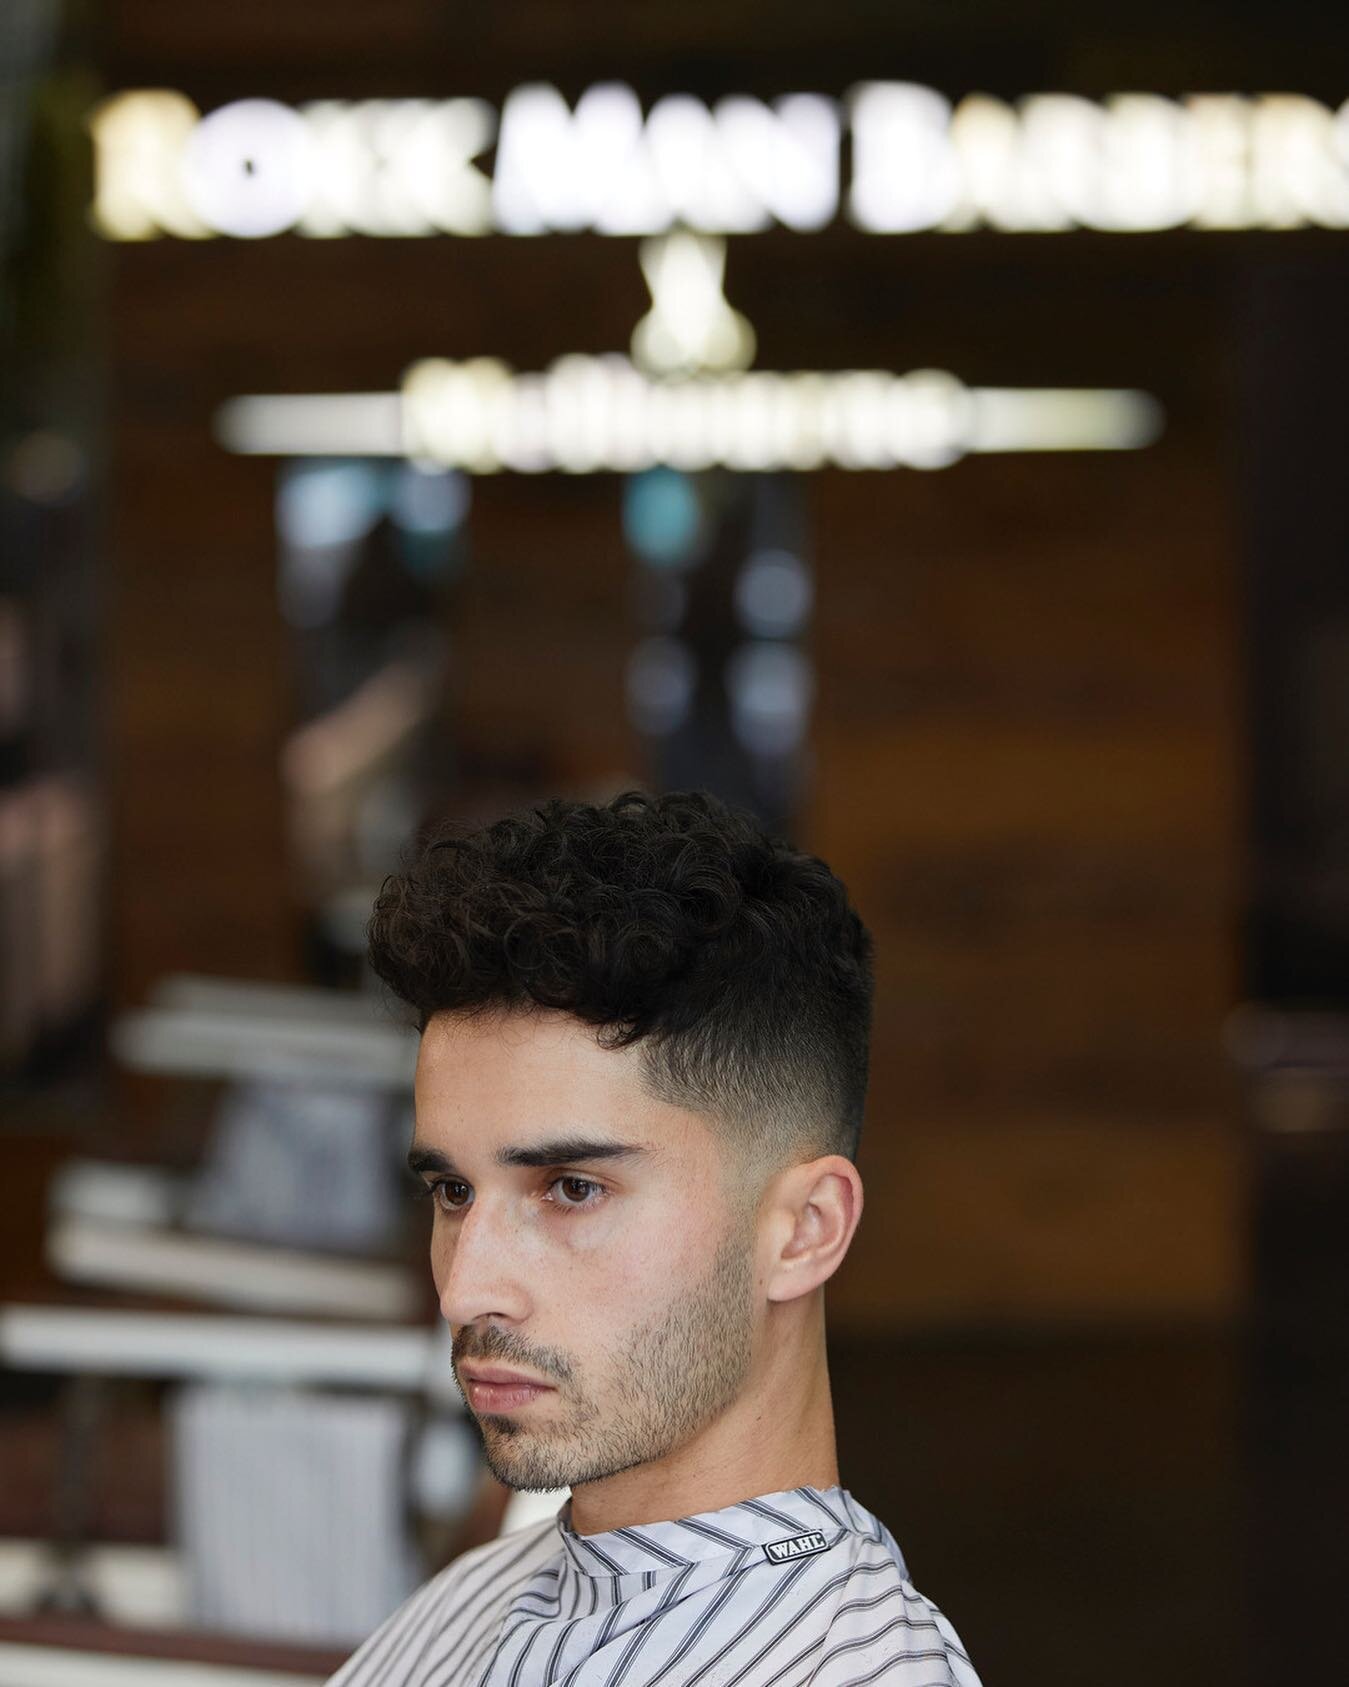 Getting fresh for the weekend Melbourne 👊🏼

Hair: @stellap.barber 
Location: Rokkman Barbers Toora